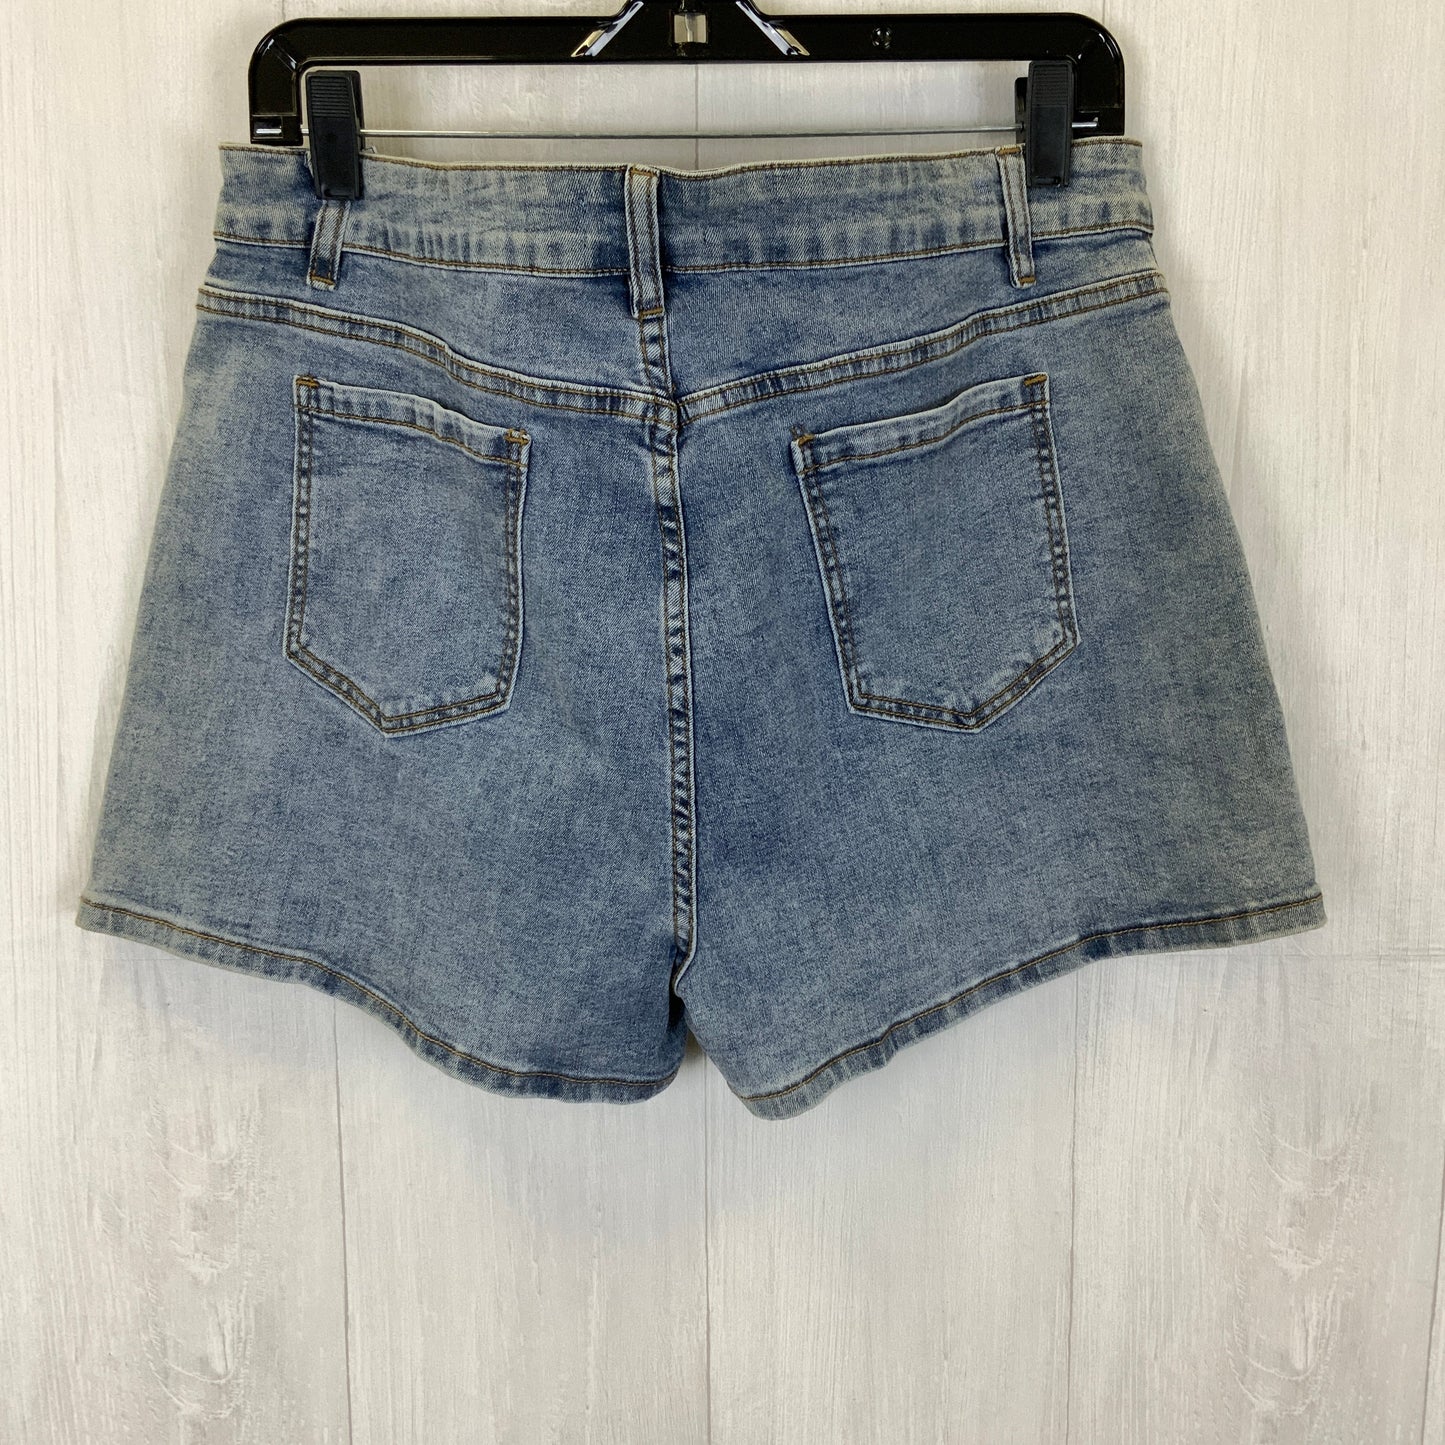 Blue Denim Shorts Clothes Mentor, Size 12